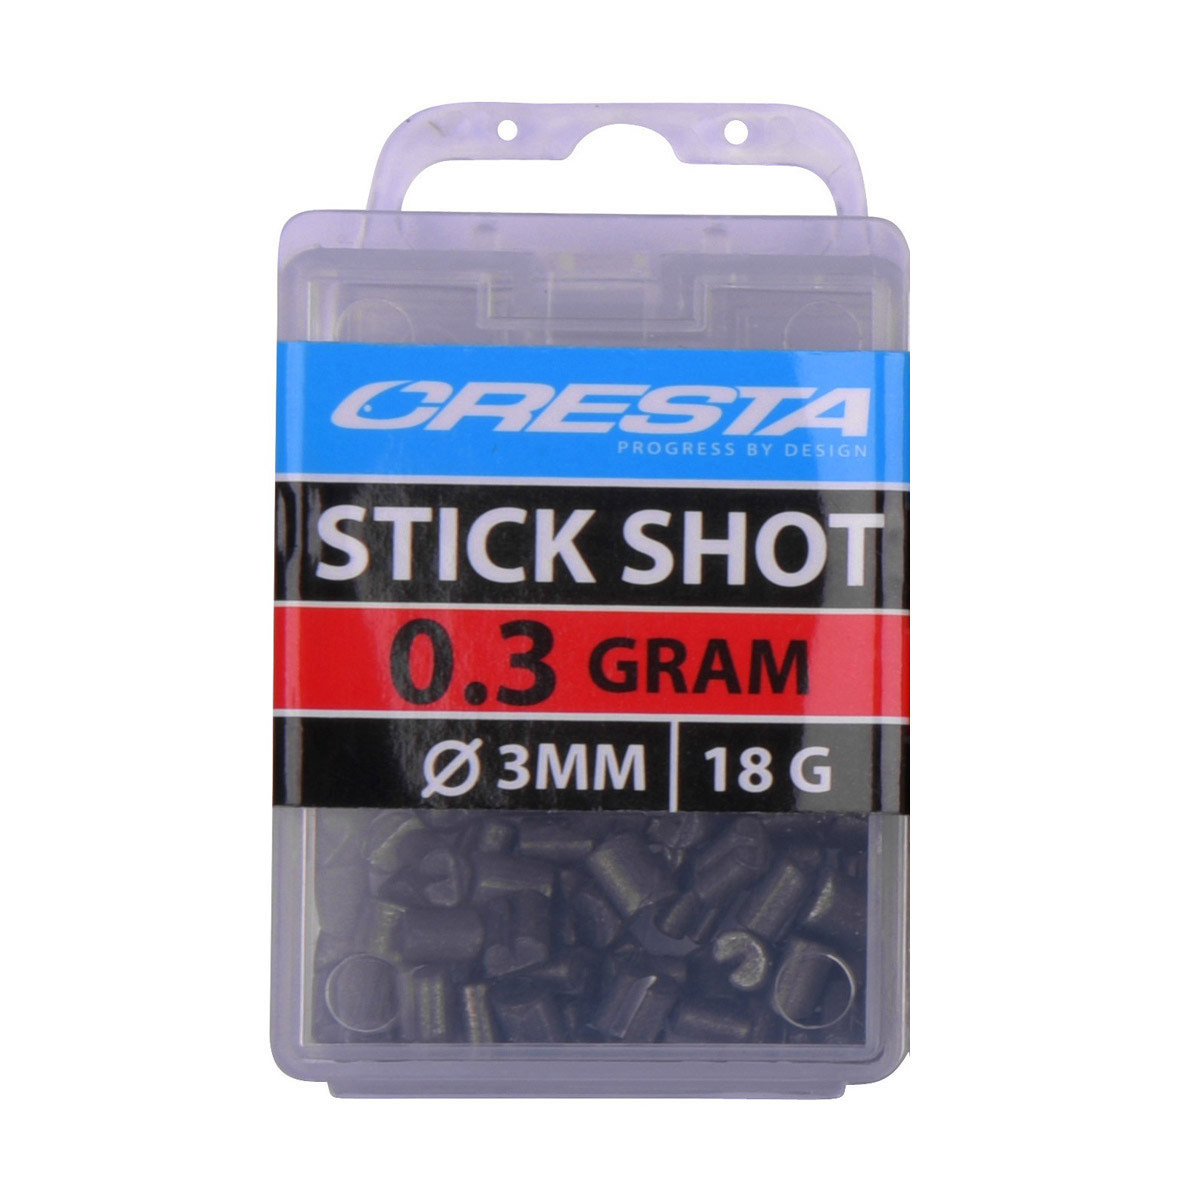 Spro Cresta Stick Shots 3 MM